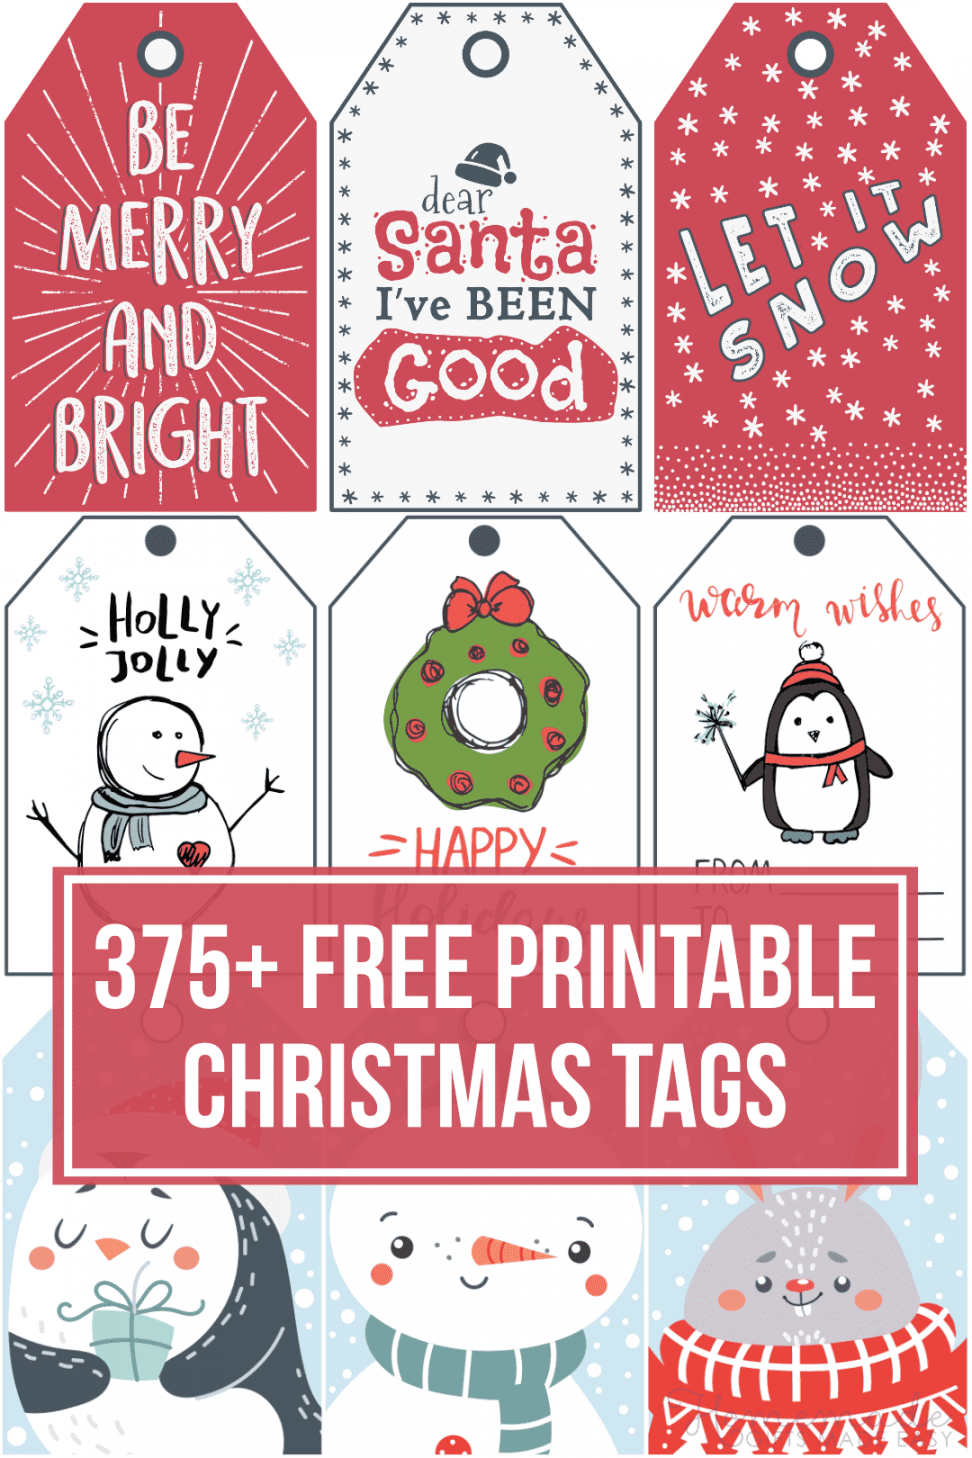 Free Printable Gift Tags - Printable - + Free Printable Christmas Tags for your Holiday Gifts